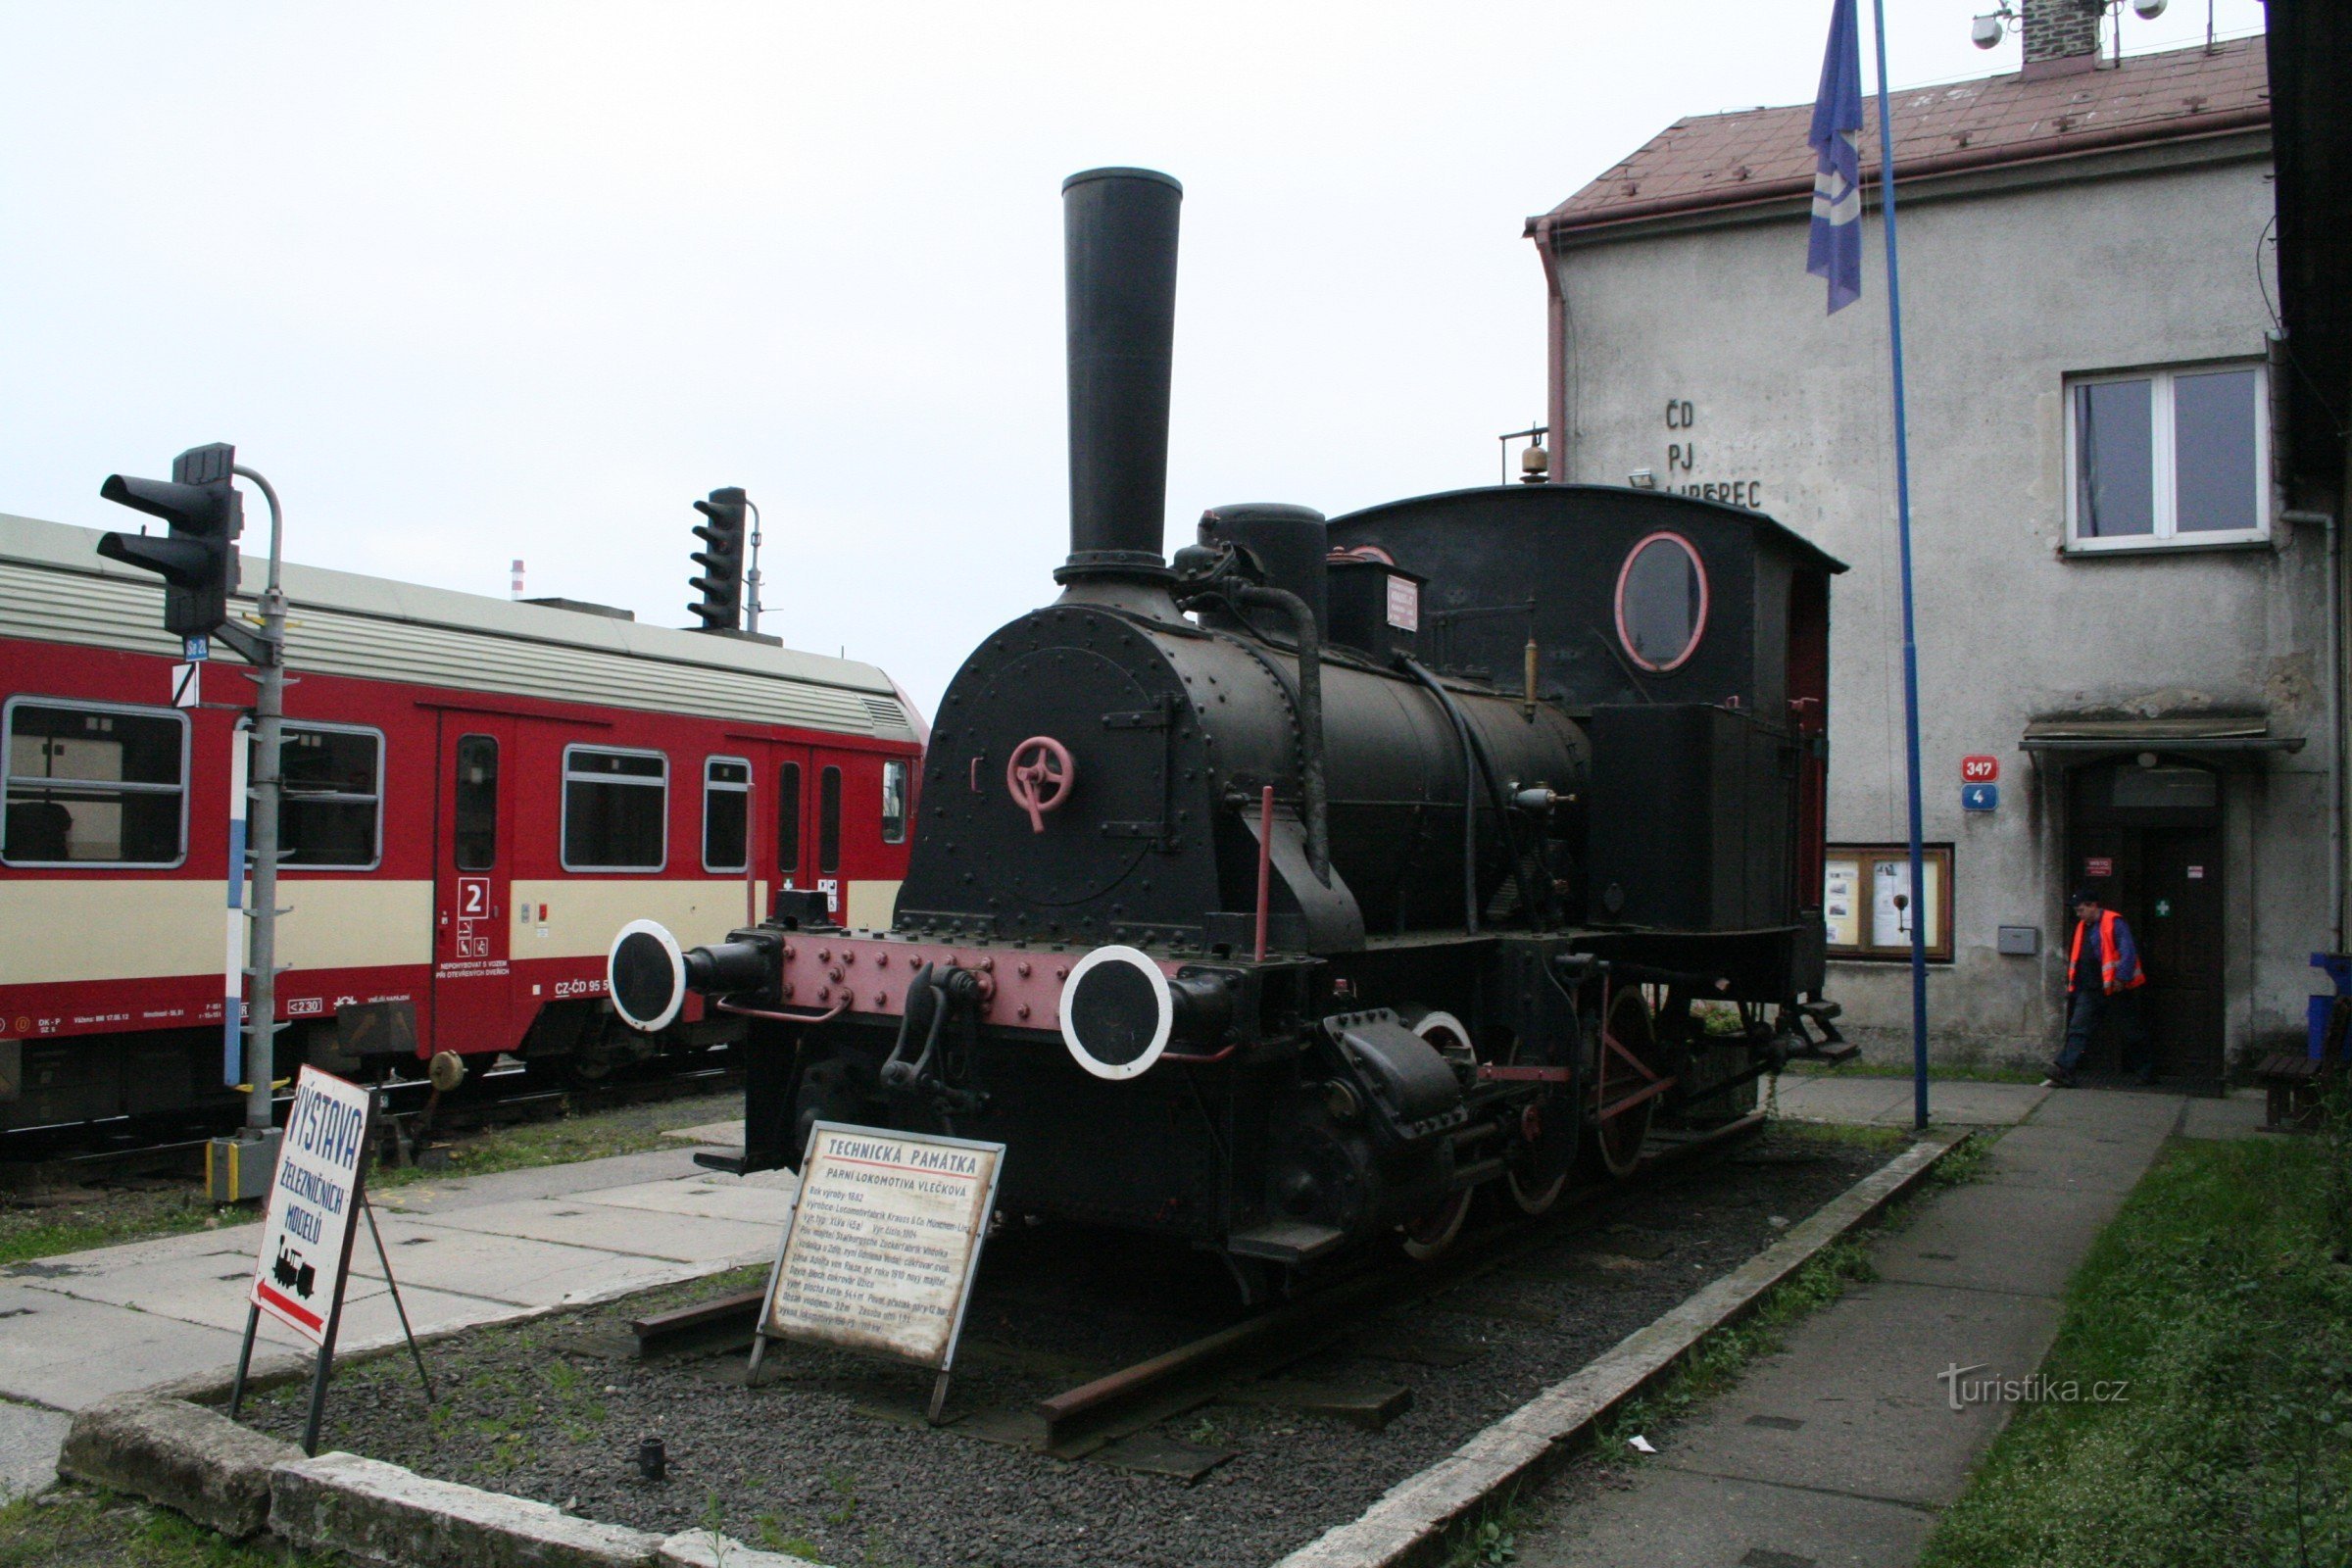 Μνημείο σιδηροδρόμων - ατμομηχανή Adolf